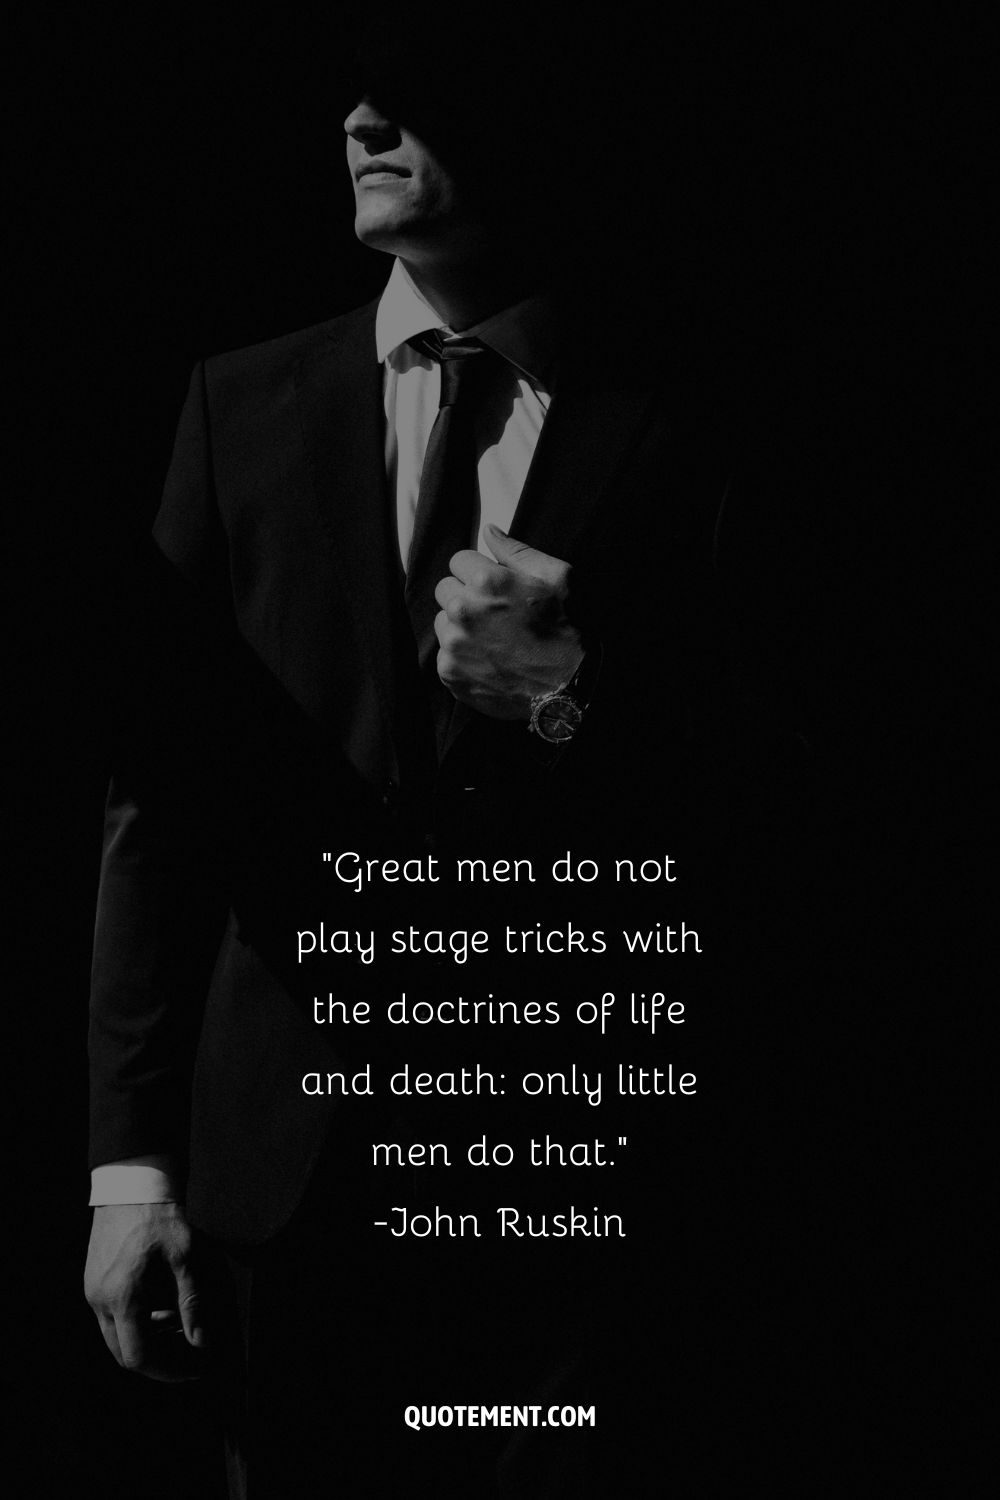 Los grandes hombres no juegan trucos de escenario con las doctrinas de la vida y la muerte, sólo los pequeños hombres lo hacen.